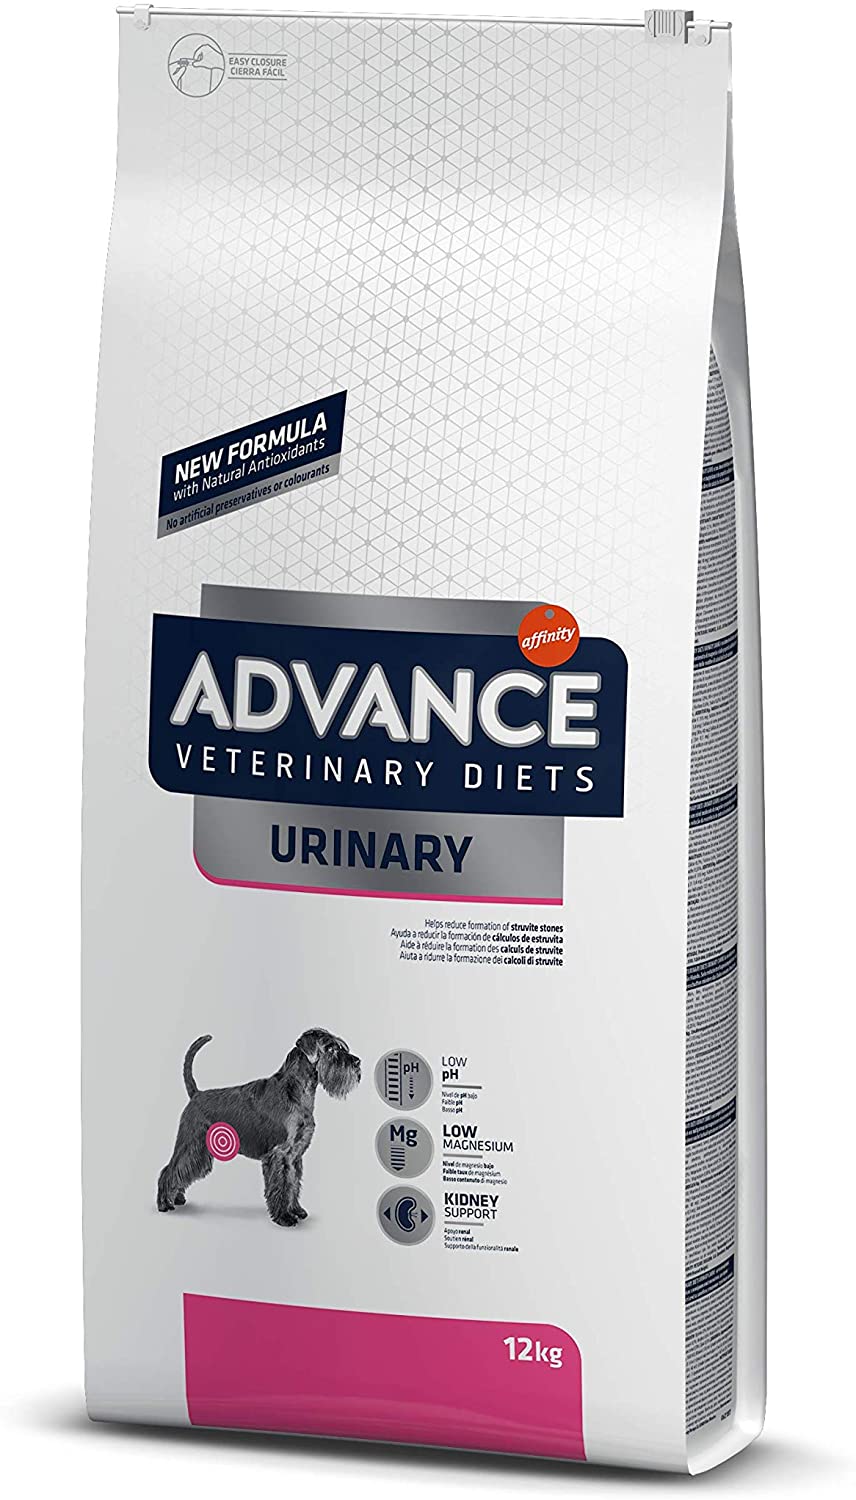  Advance Veterinary Diets Urinary Pienso para Perros con Problemas Urinarios 12 Kg 